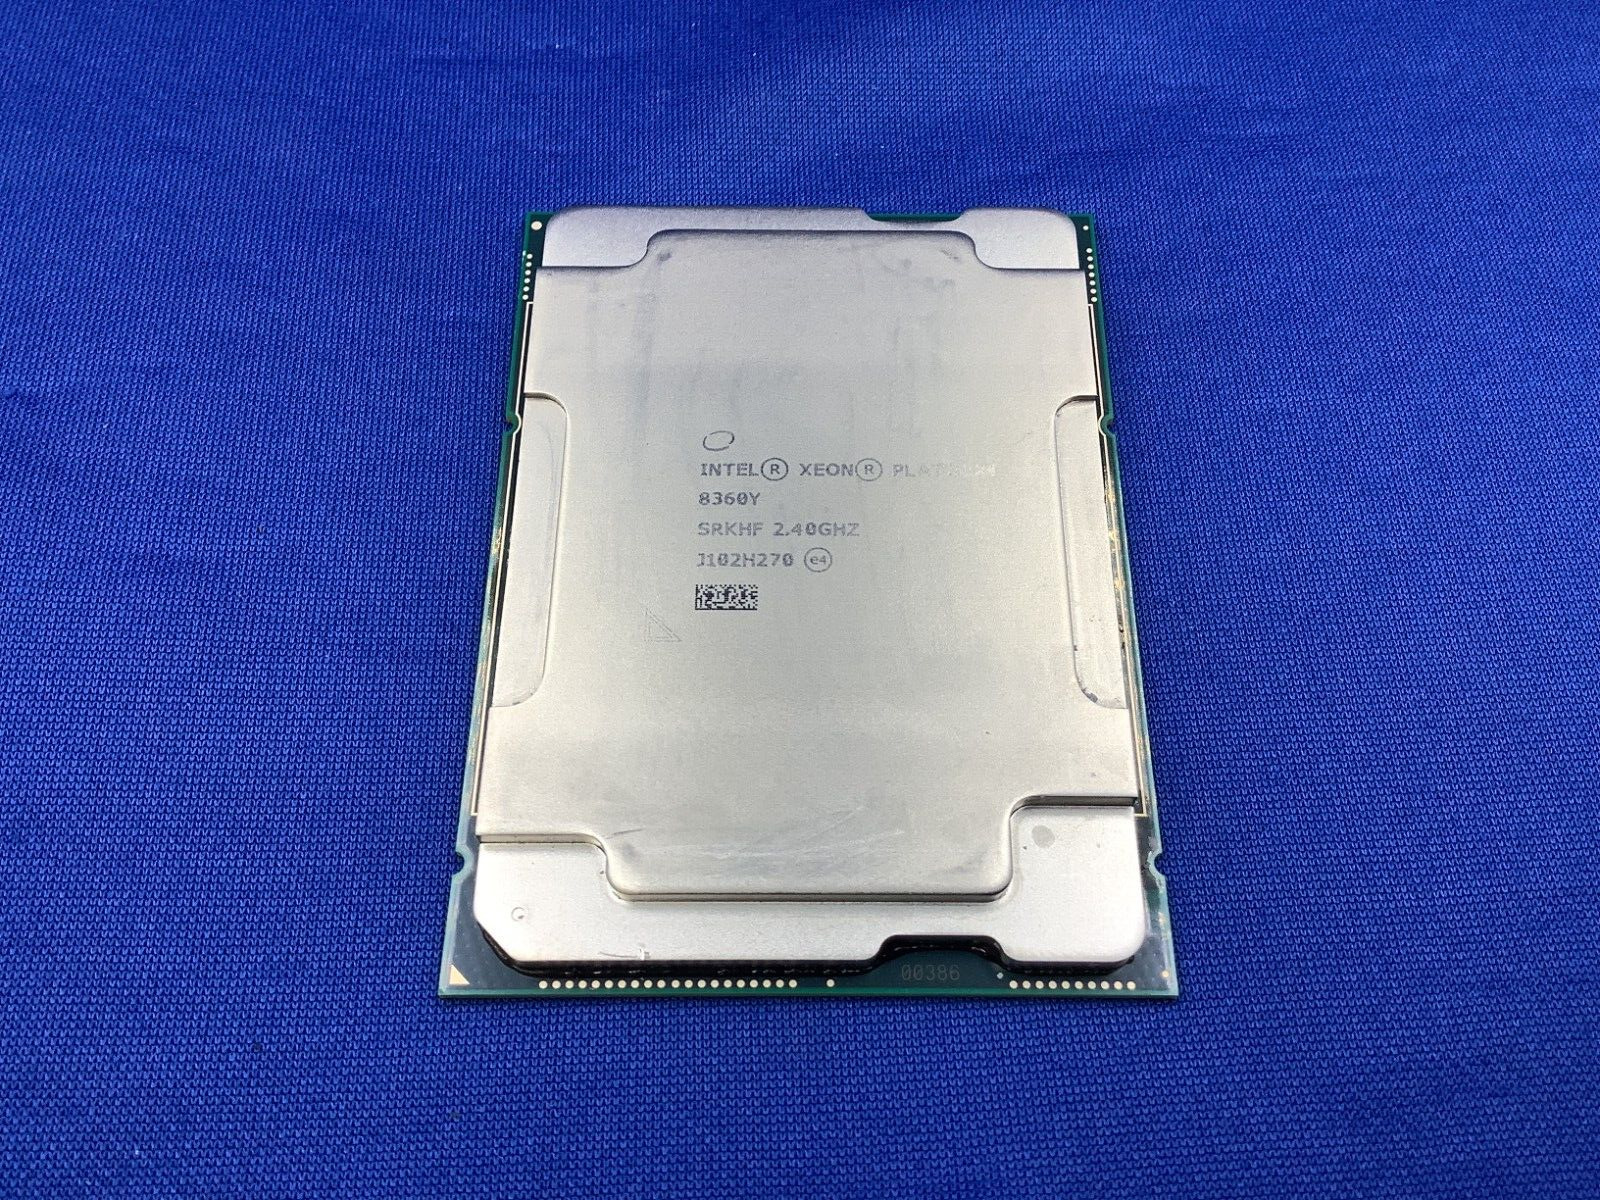 SRKHF Intel Xeon Platinum 8360Y 2.40Ghz 54Mb 36-Core 250W Processor